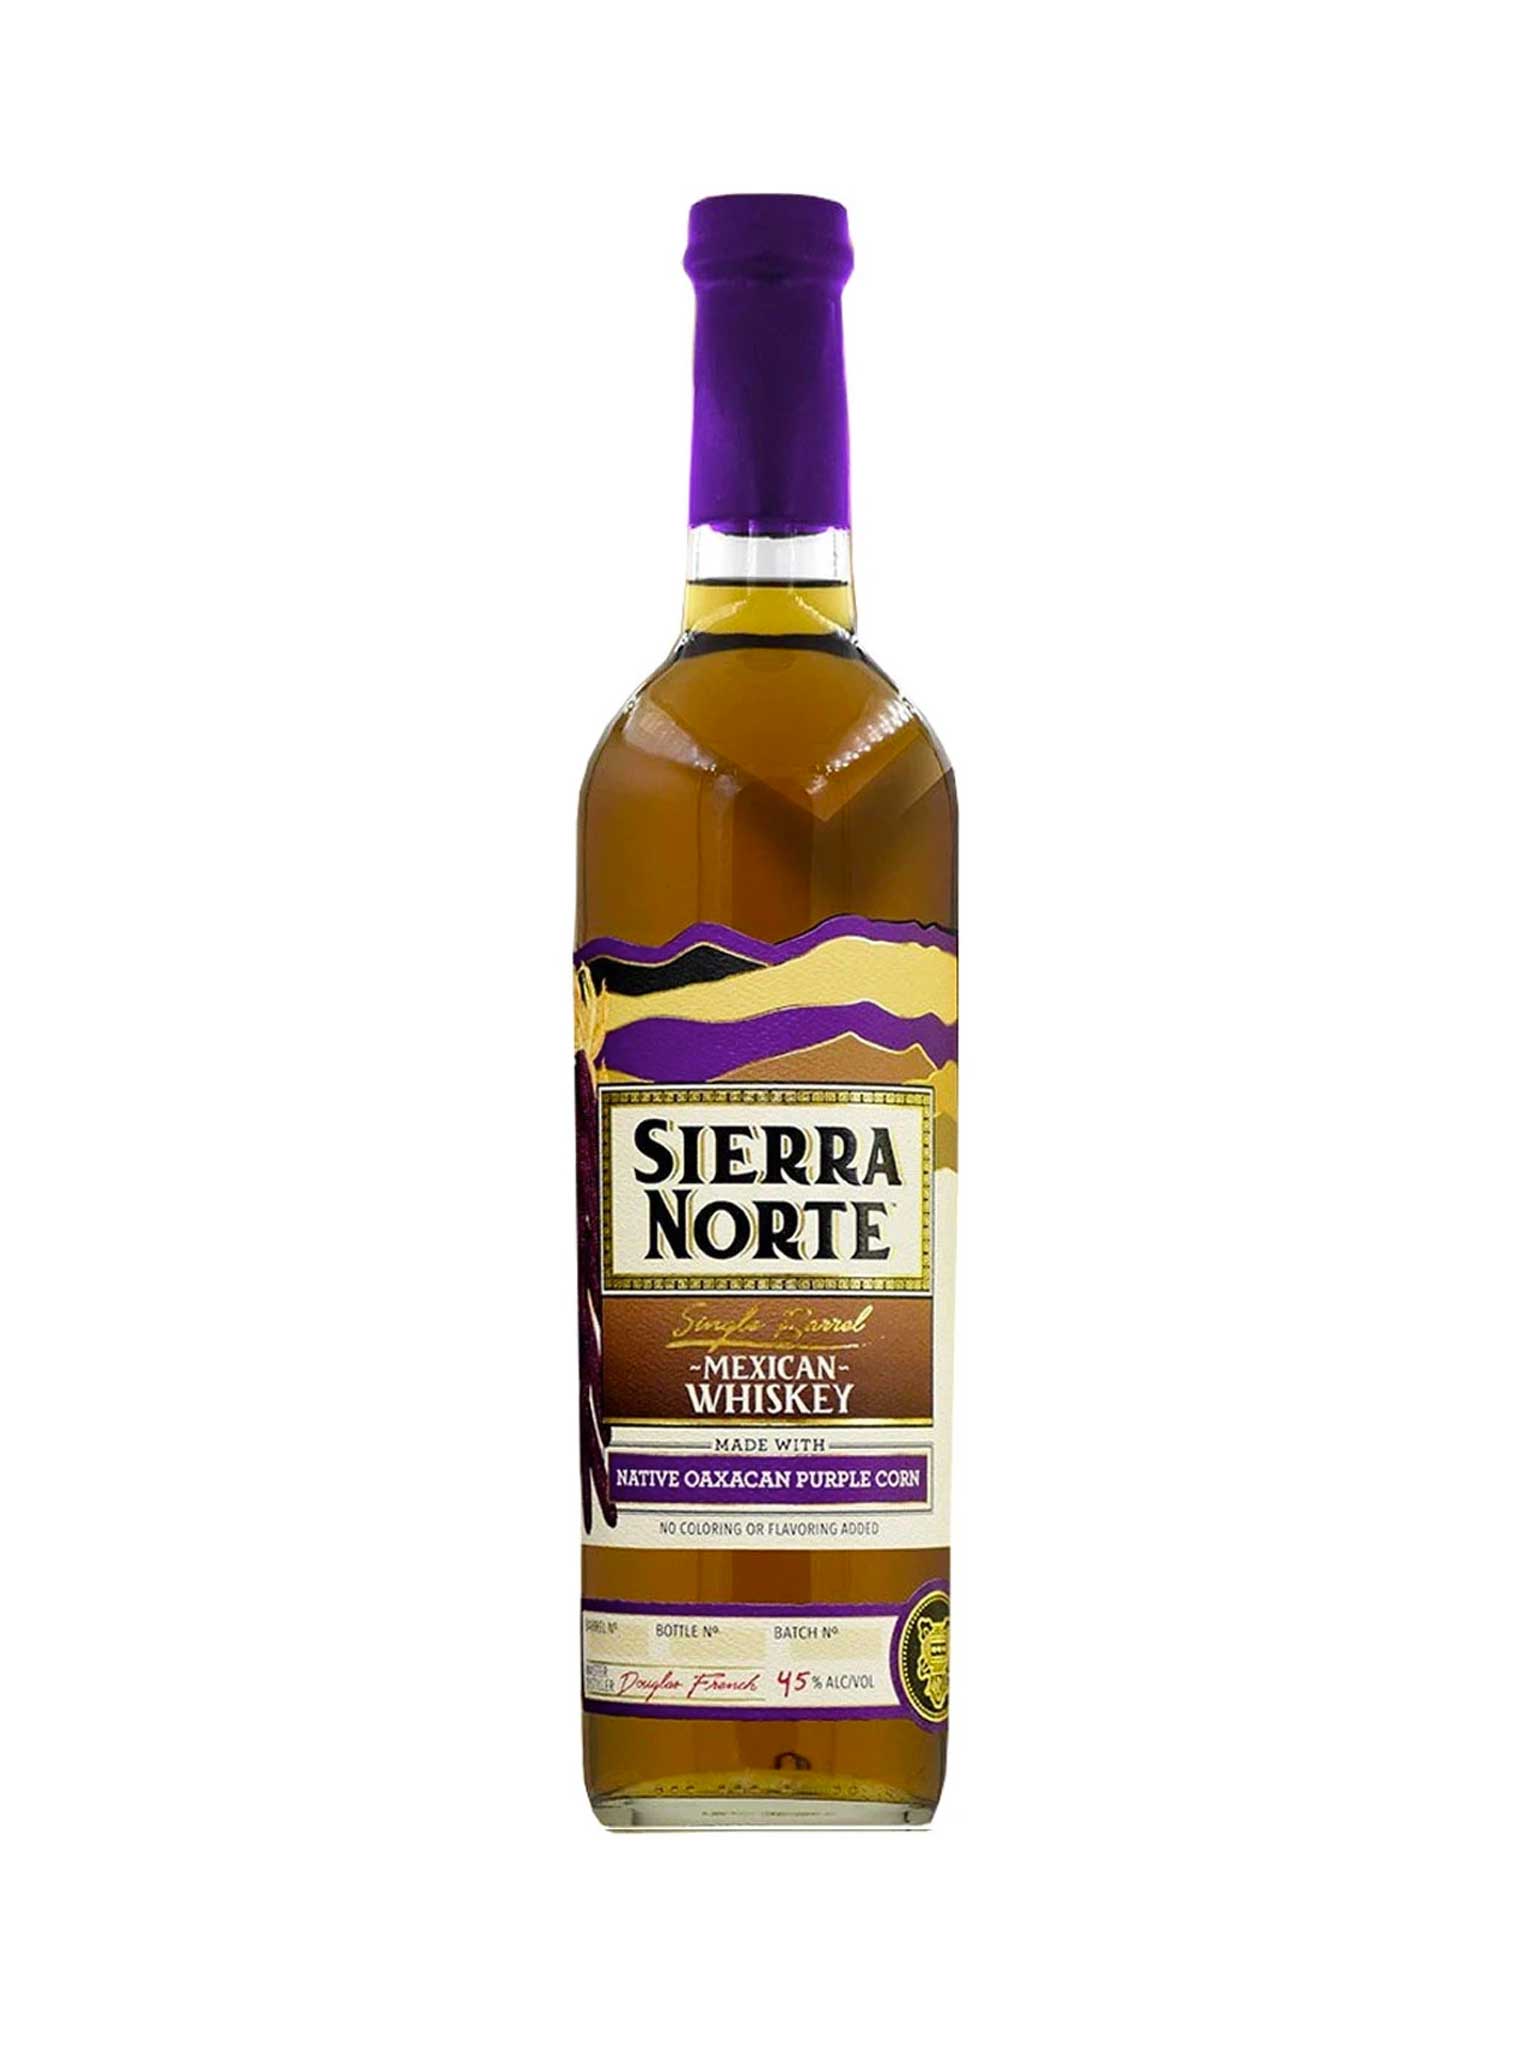 Sierra Norte Single Barrel Mexican Whiskey (Purple Label) 750mL